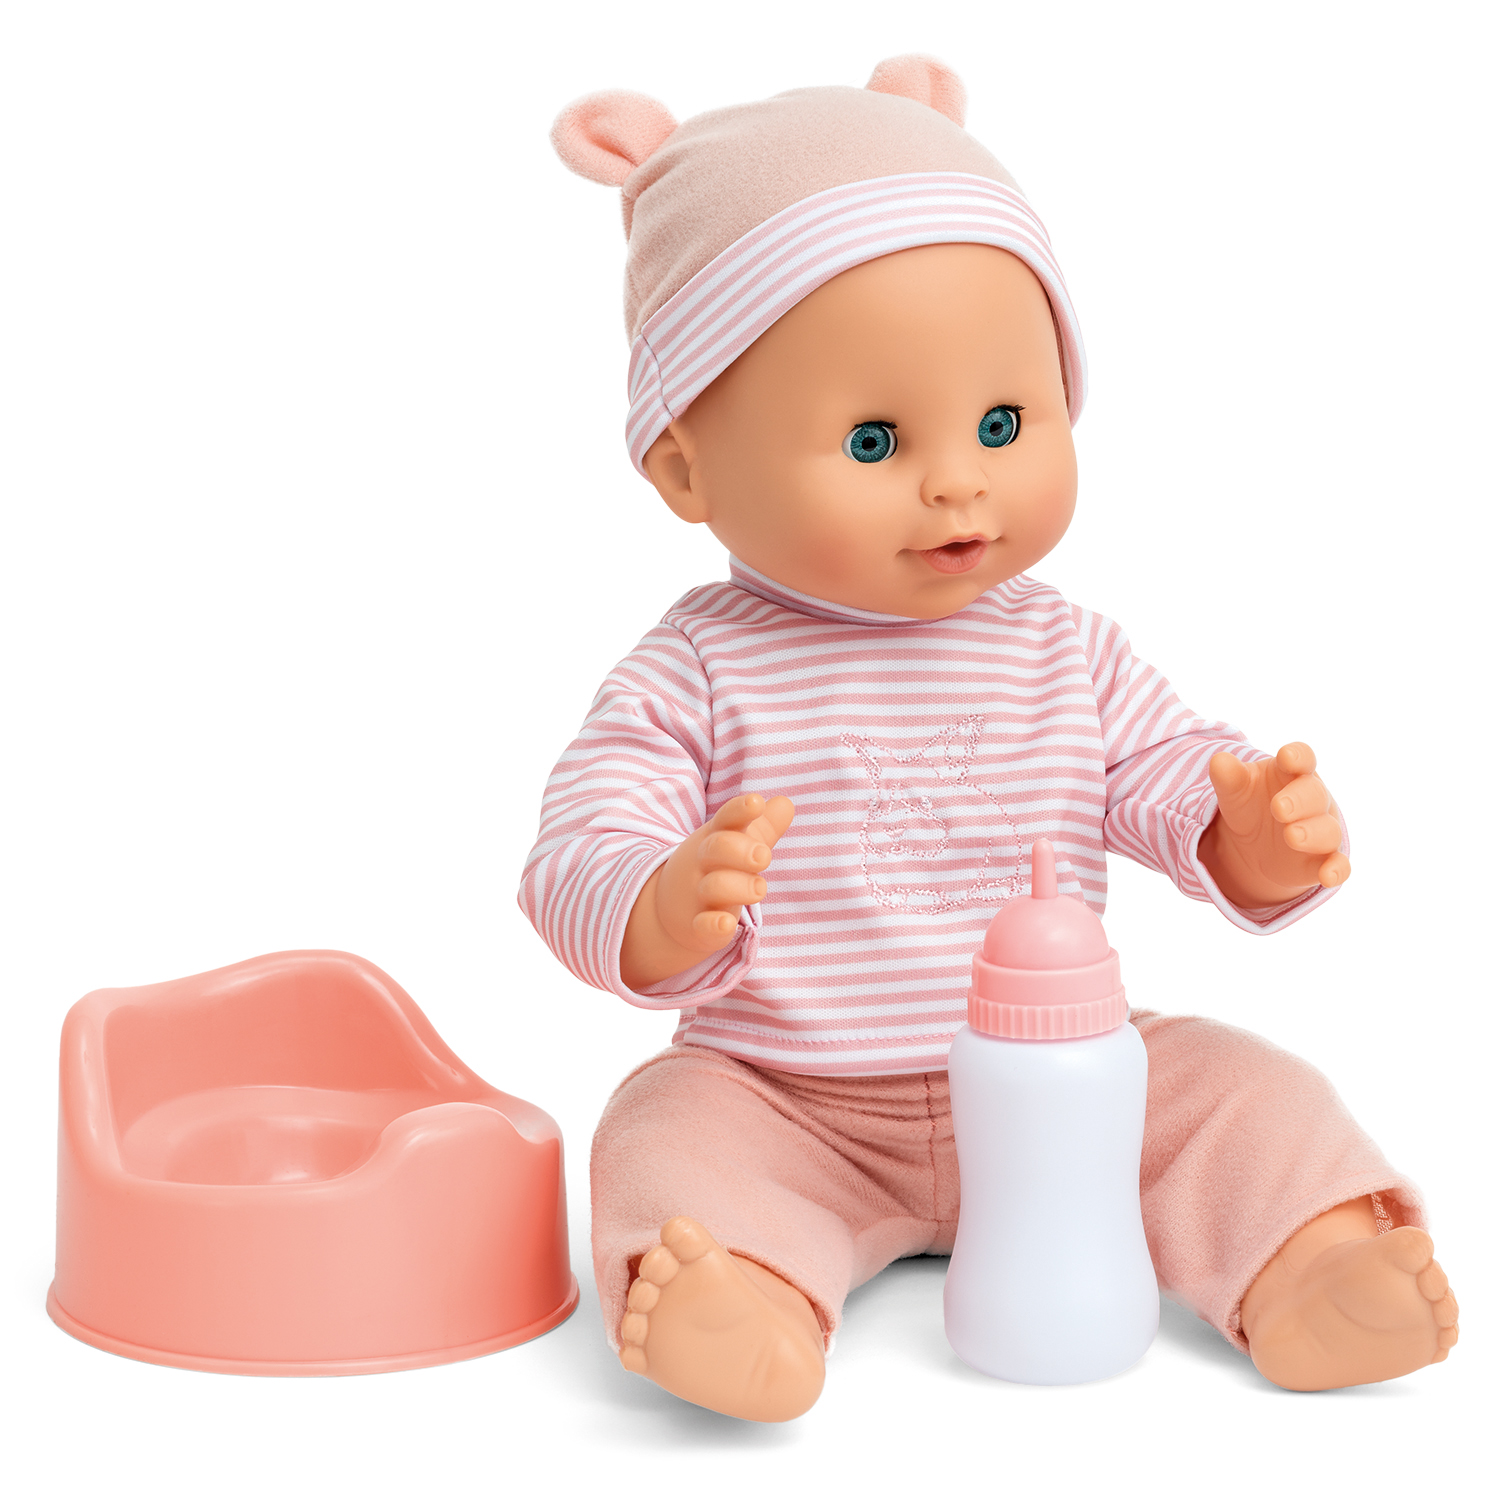 Puppen essen-nässen-babypuppe sara